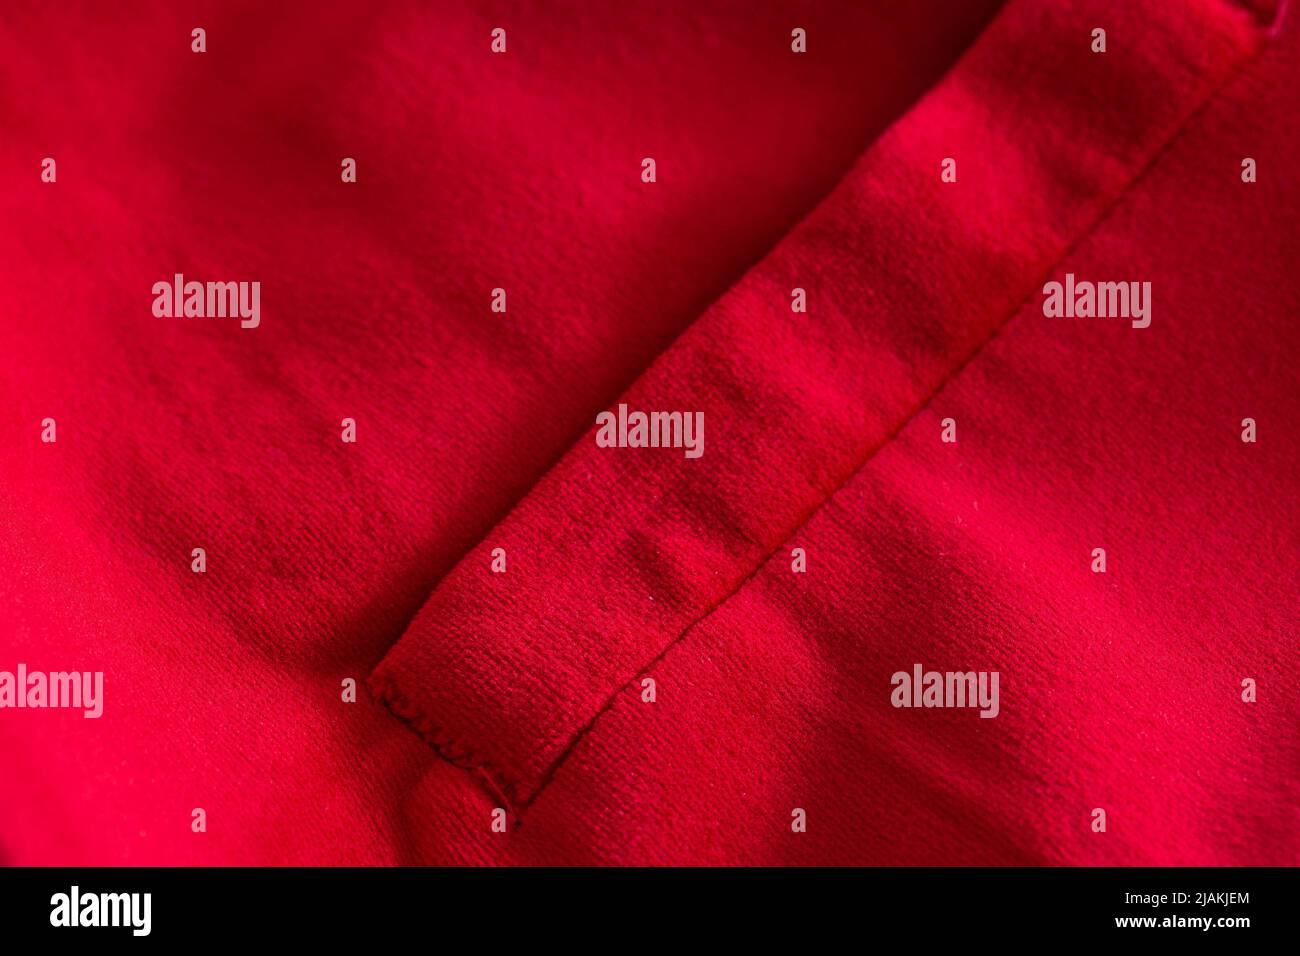 Red stylish jacket with pocket, background. Stylish clothes Stock Photo